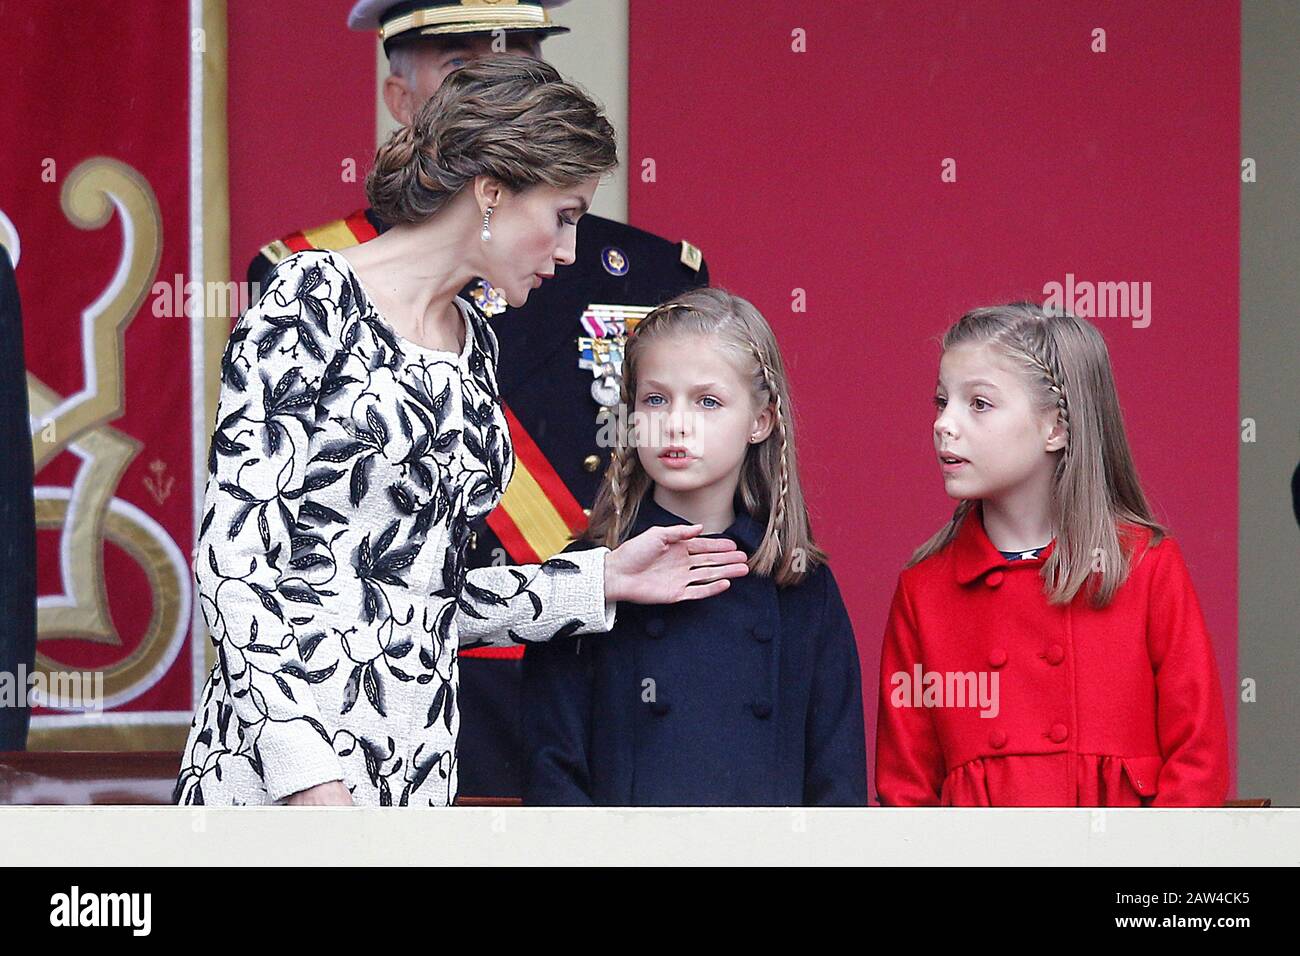 (L-R) die spanische Königin Letizia, die spanische Prinzessin Leonor und die spanische Prinzessin Sofia nehmen an der Militärparade des nationalen Tages Teil. Oktober 2016. (ALTERPH Stockfoto